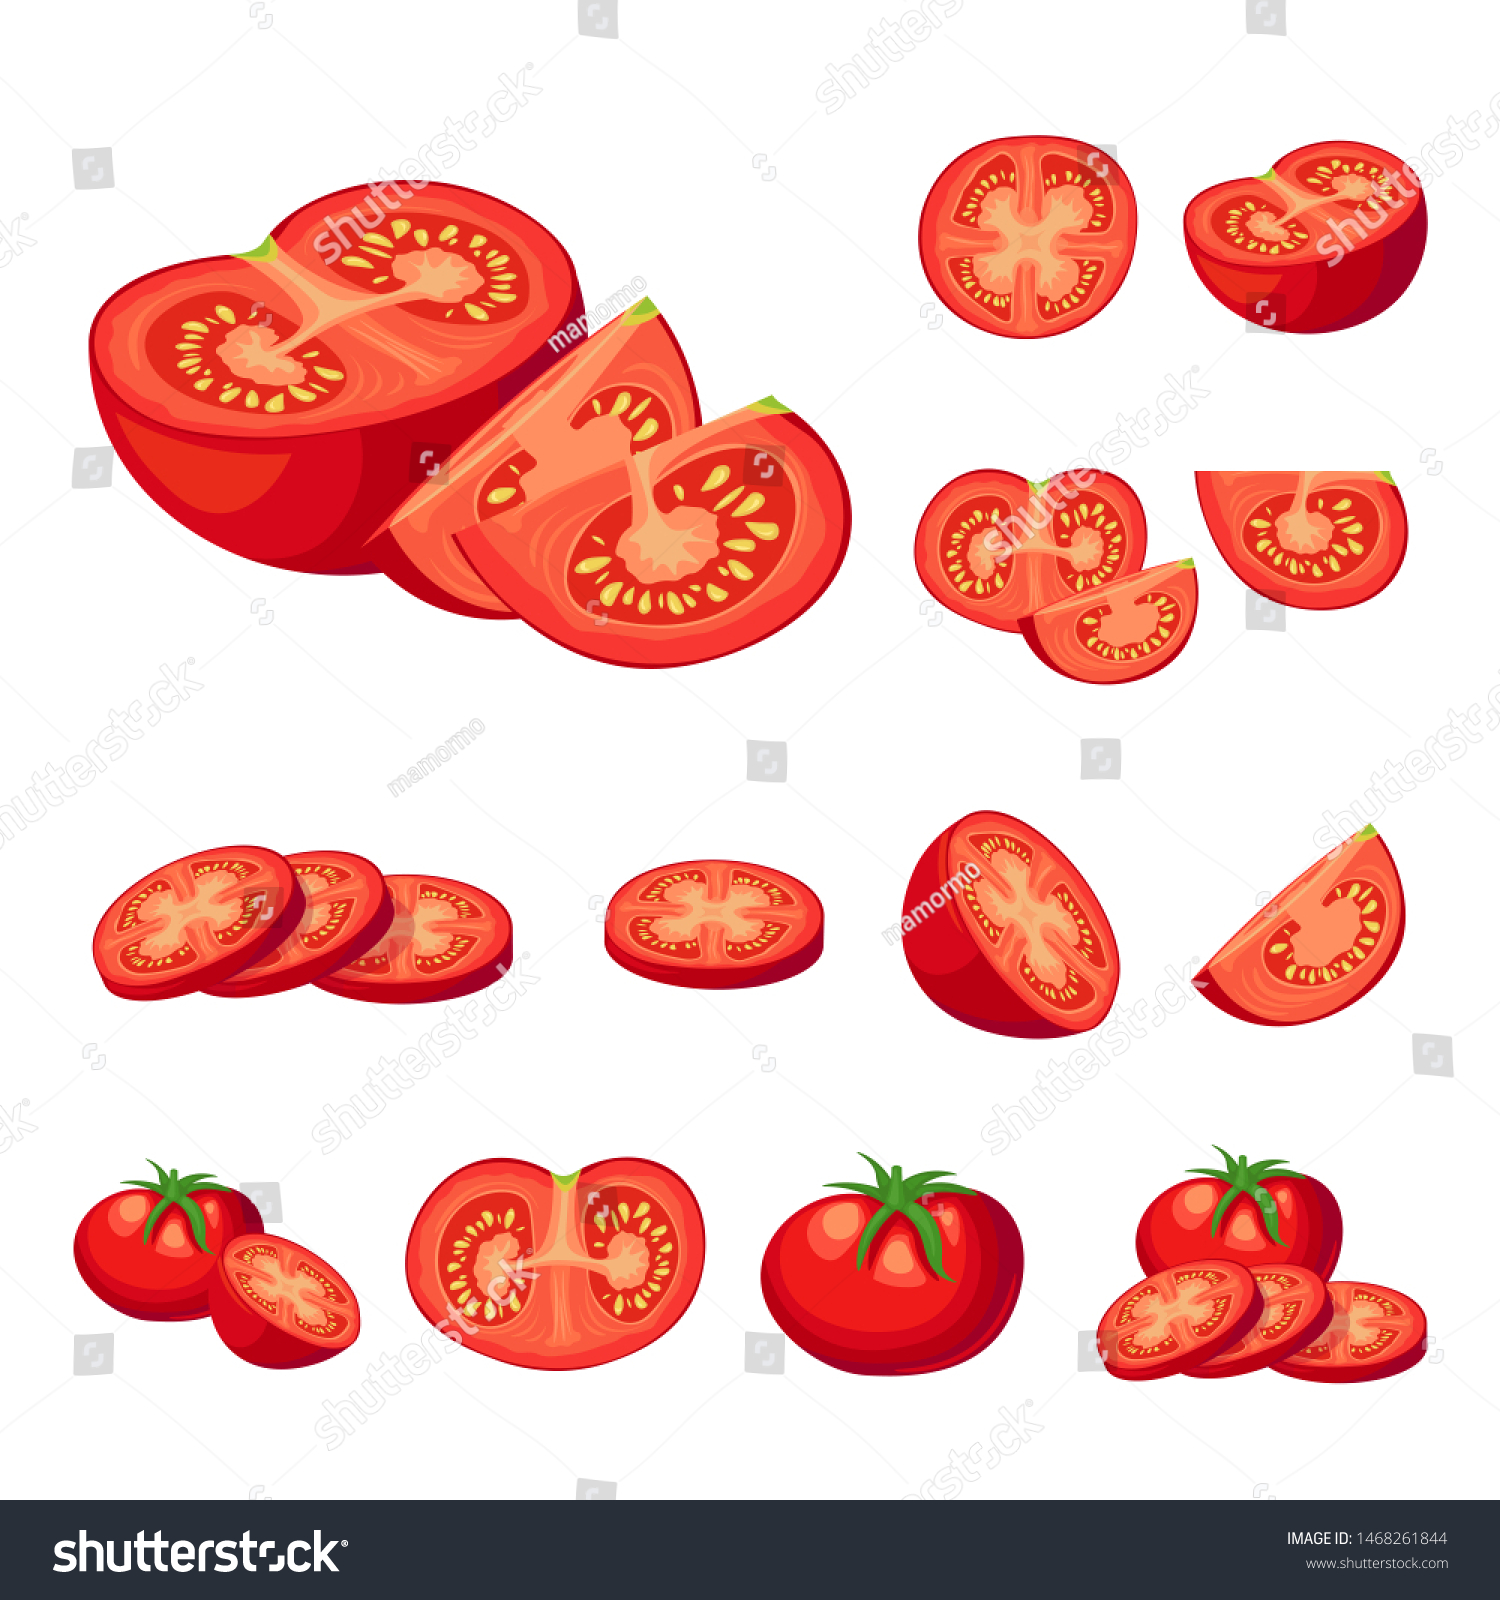 新鮮に切った赤いトマトベクターイラストのコレクション 半分のトマト 一切れのトマト チェリートマト 白い背景に漫画のイラスト のベクター画像素材 ロイヤリティフリー